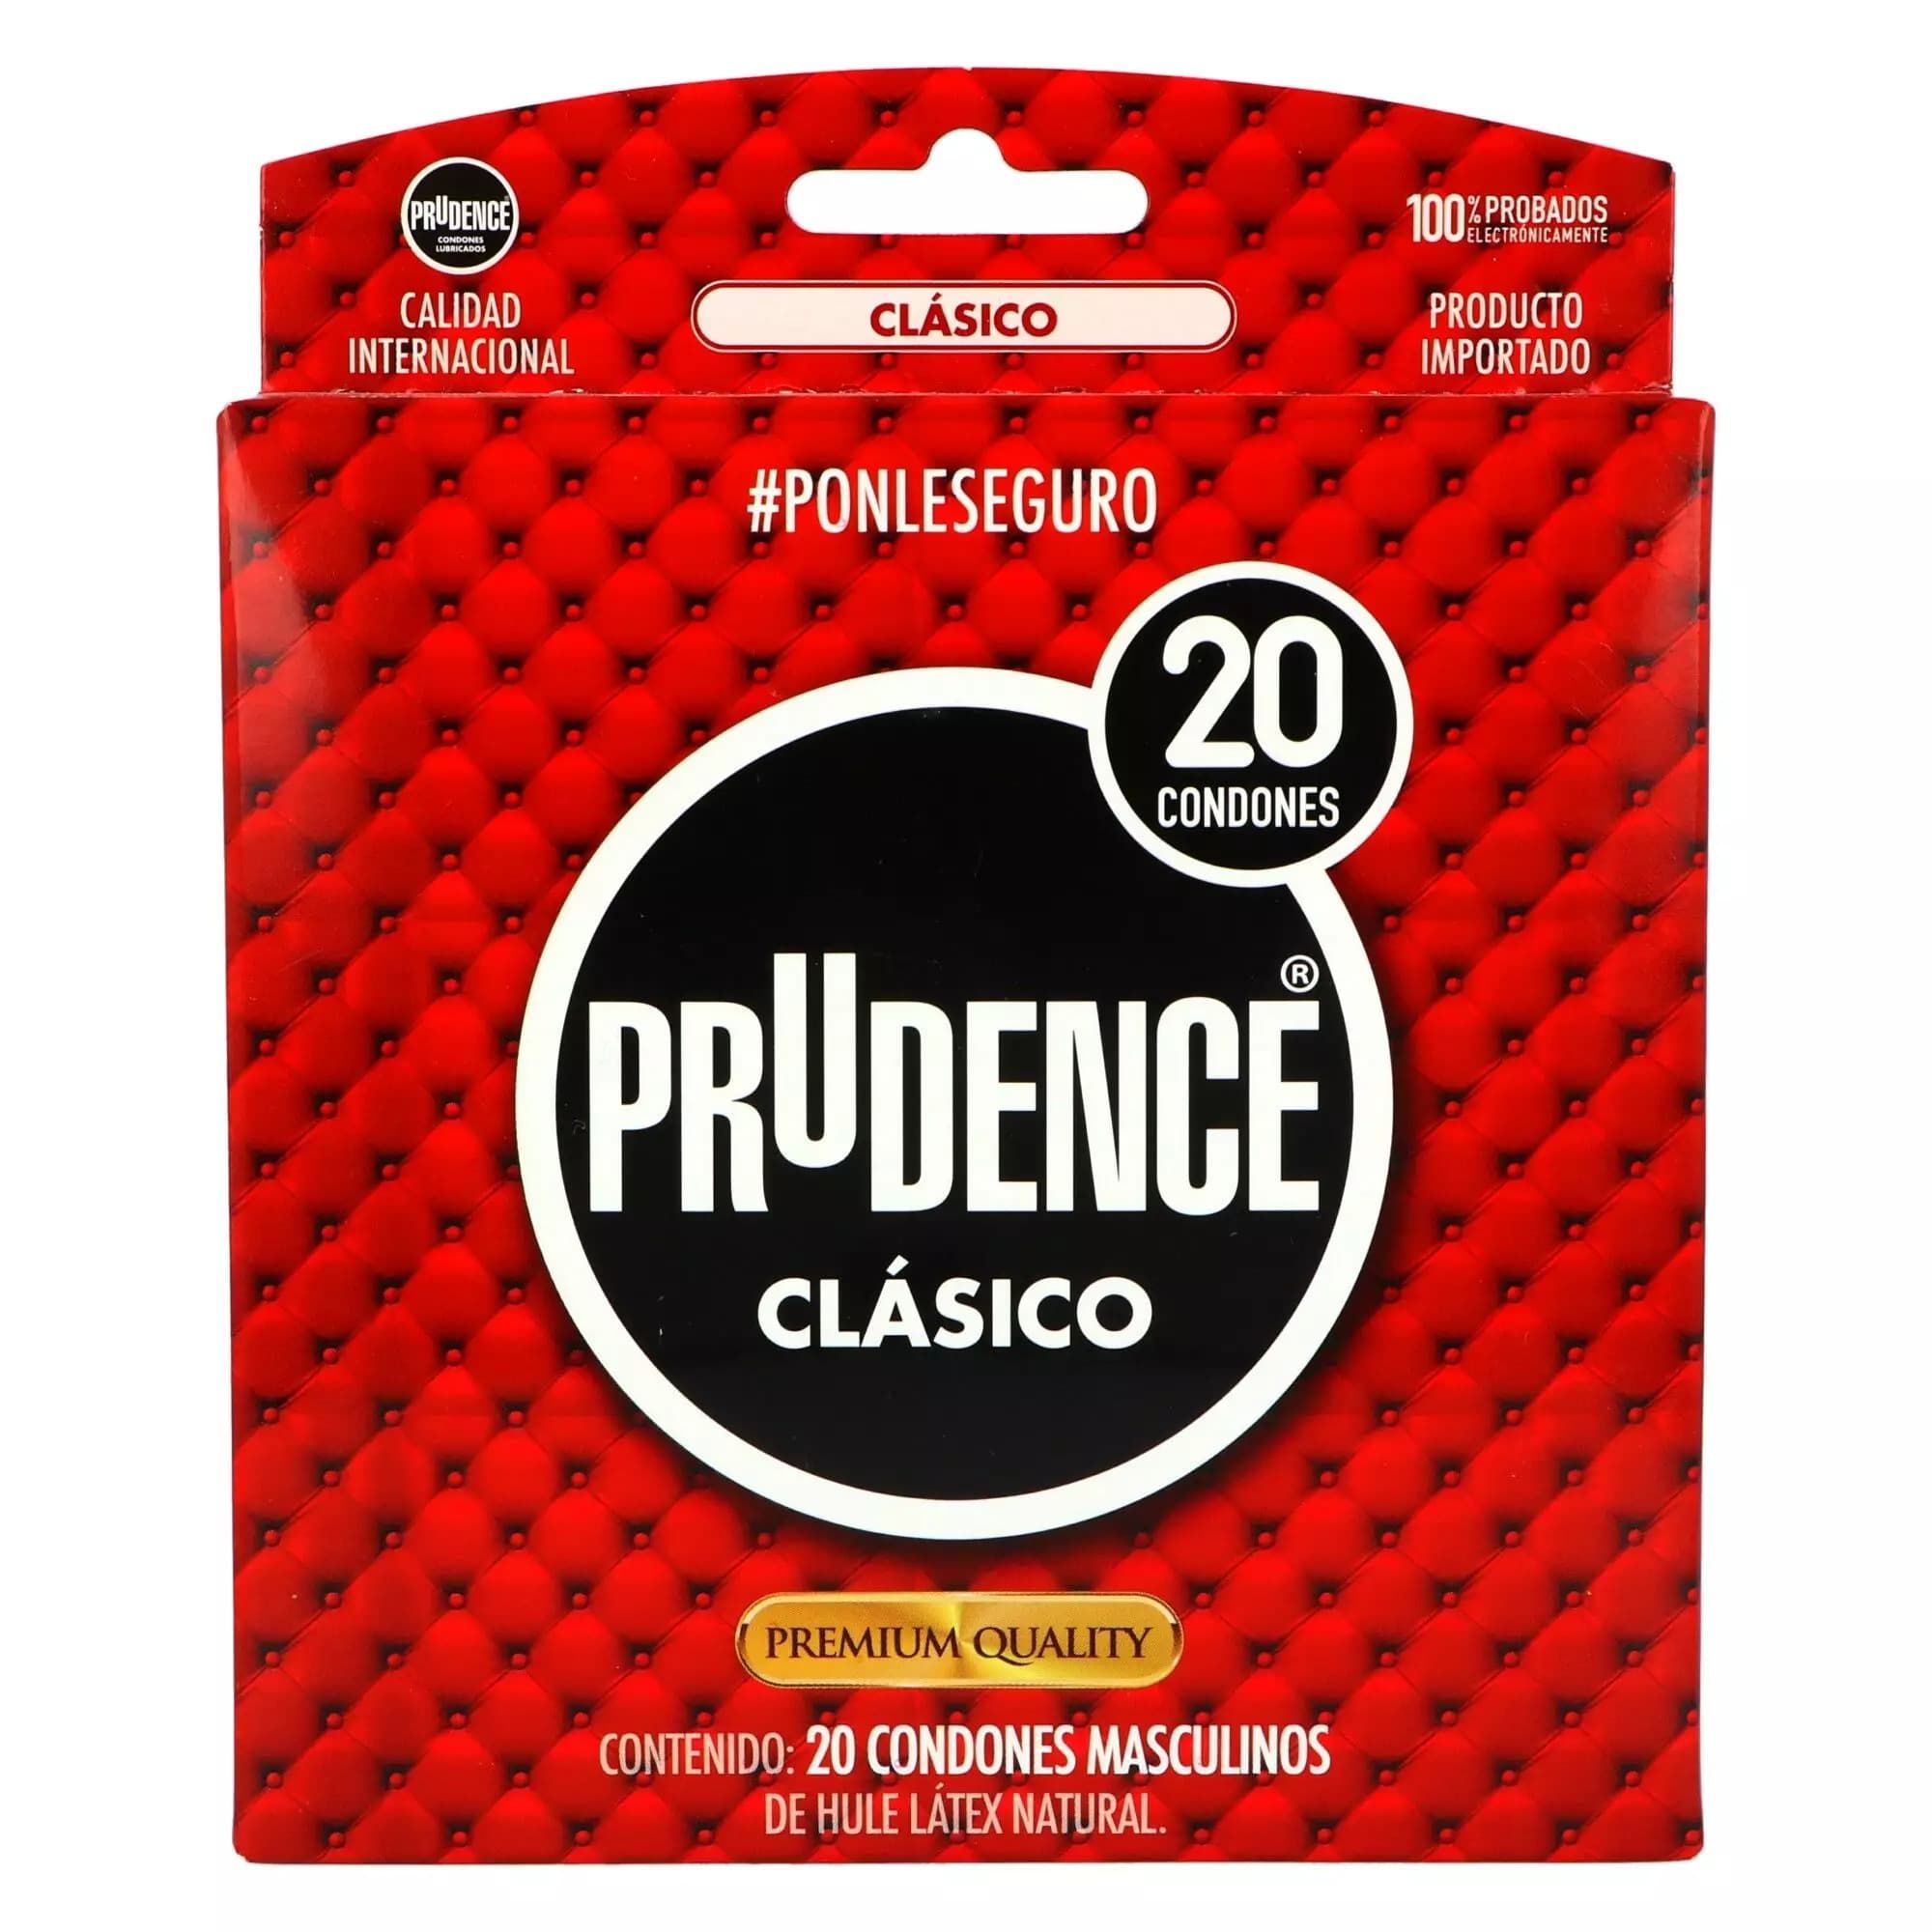 Precio Prudence clasico 20 condones | Farmalisto MX